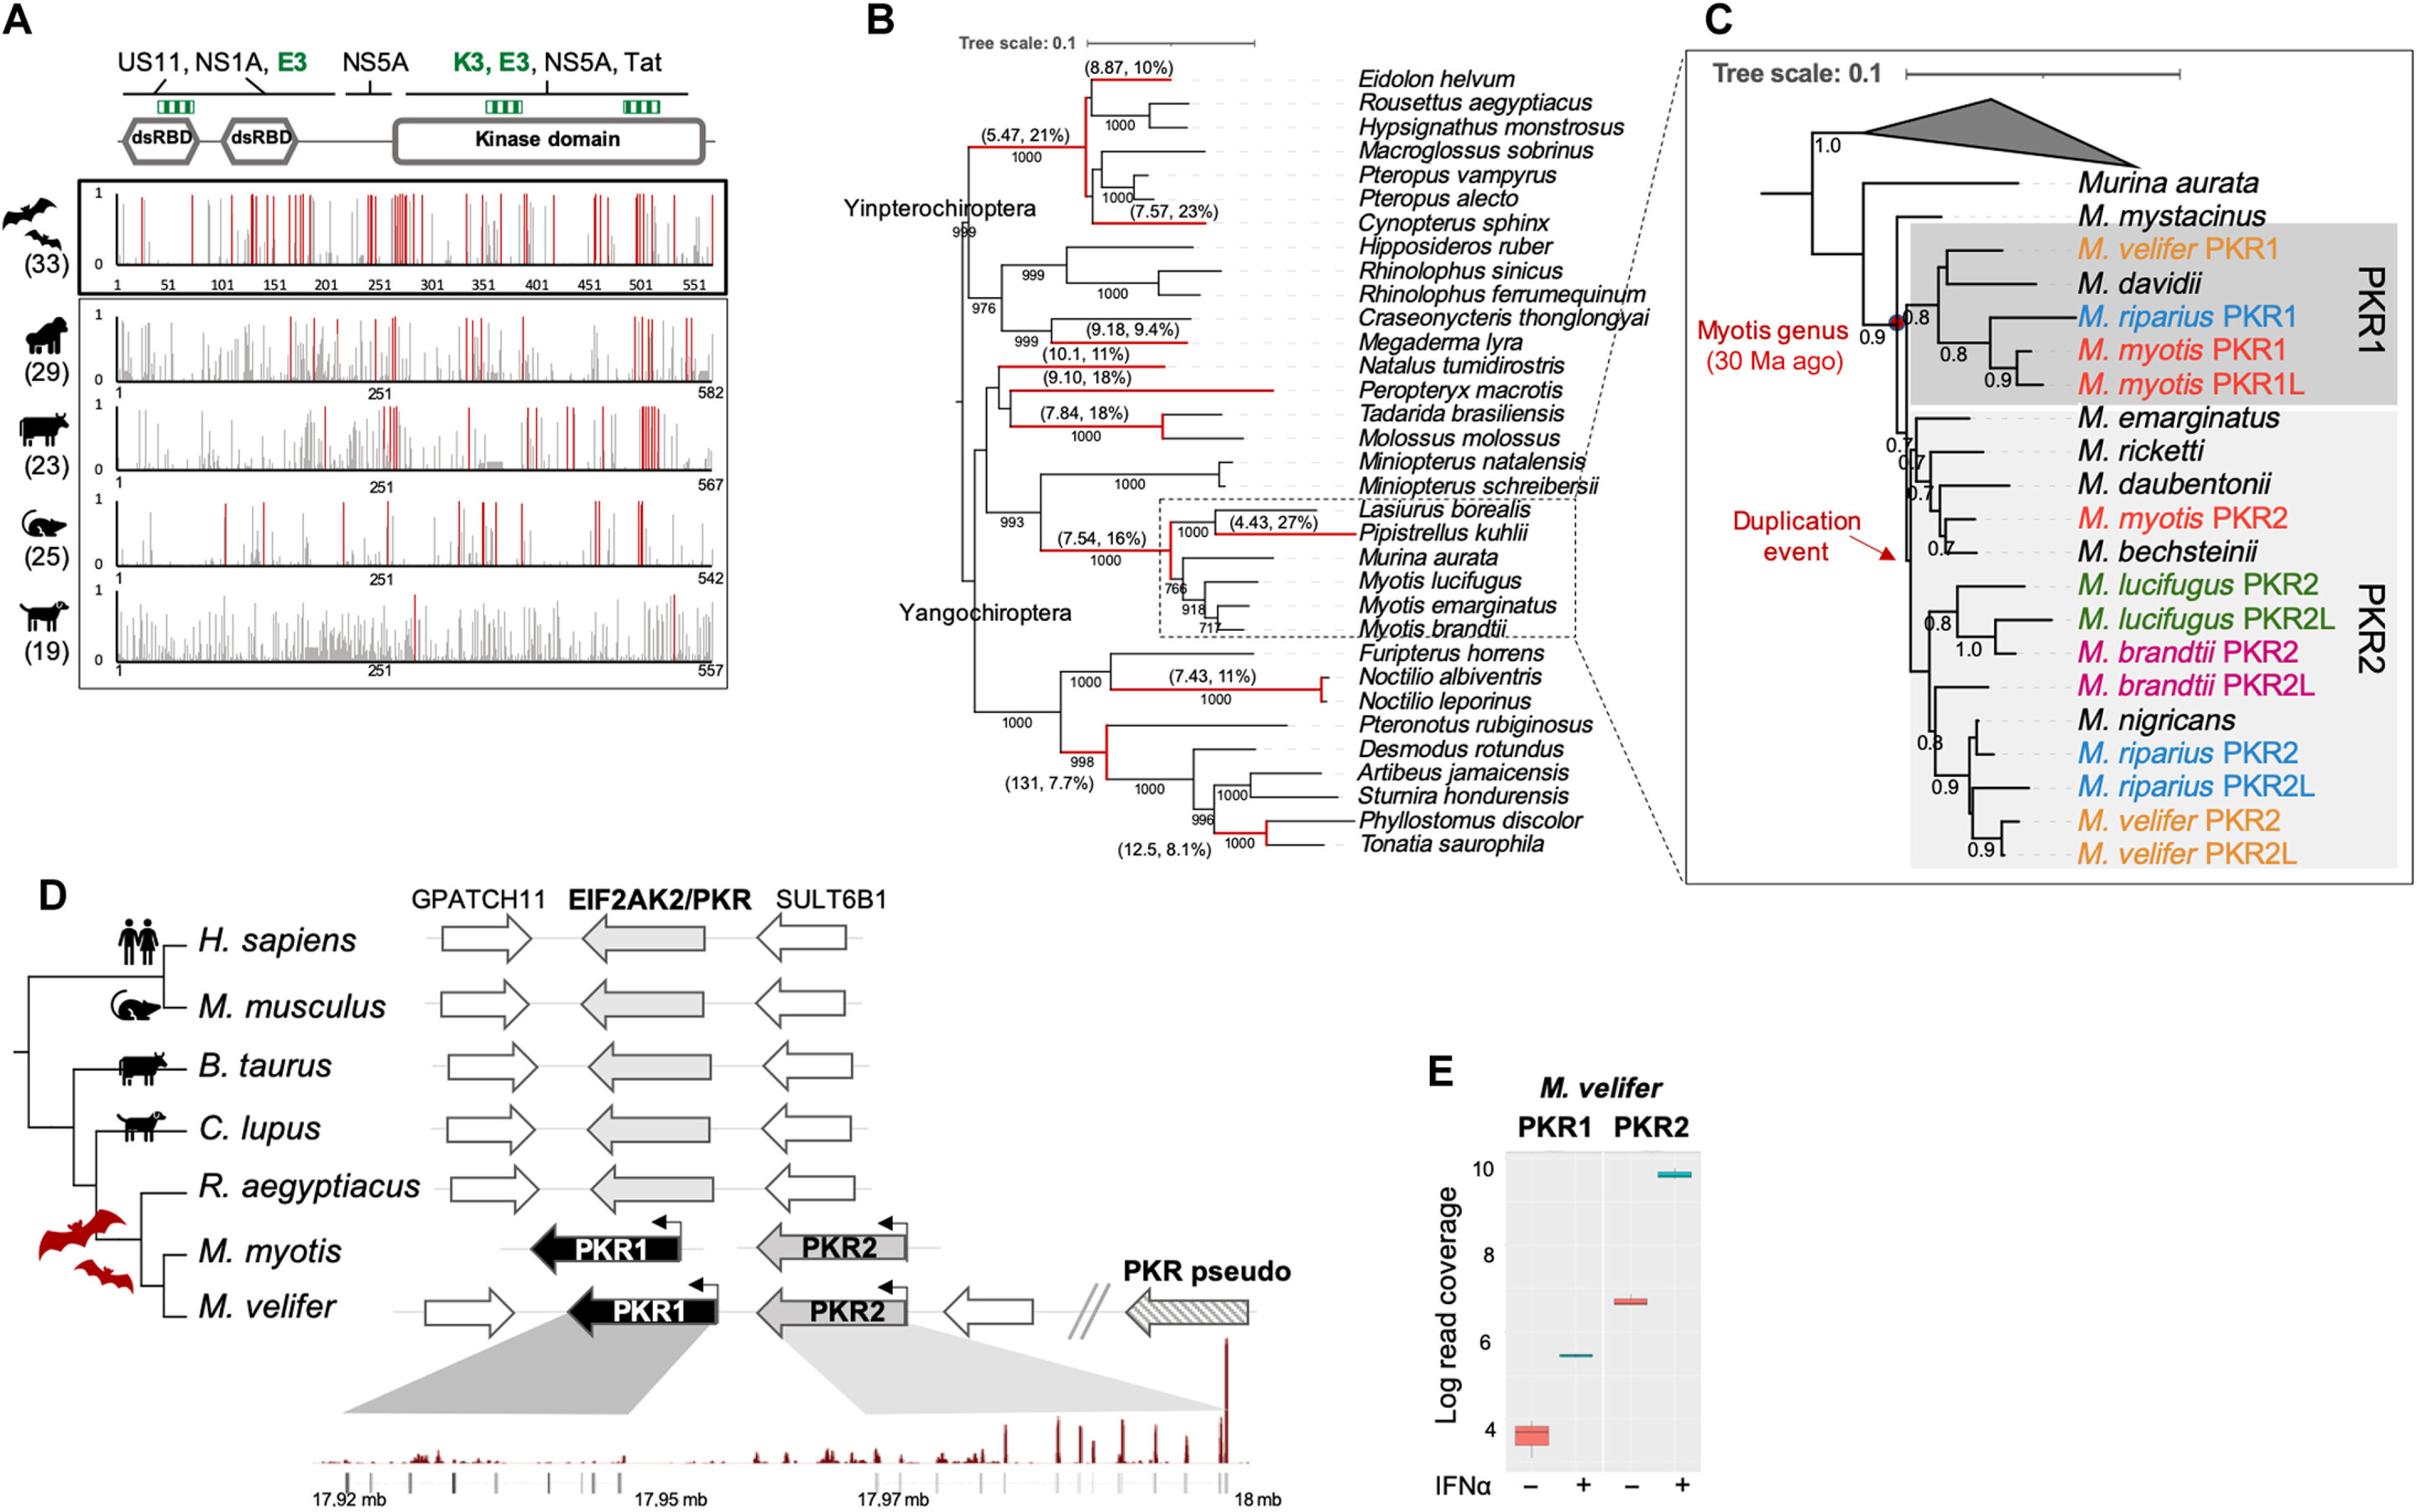 Des chercheurs découvrent des duplications génétiques répétées et une diversification génétique dans la protéine kinase R chez les chauves-souris à oreilles de souris